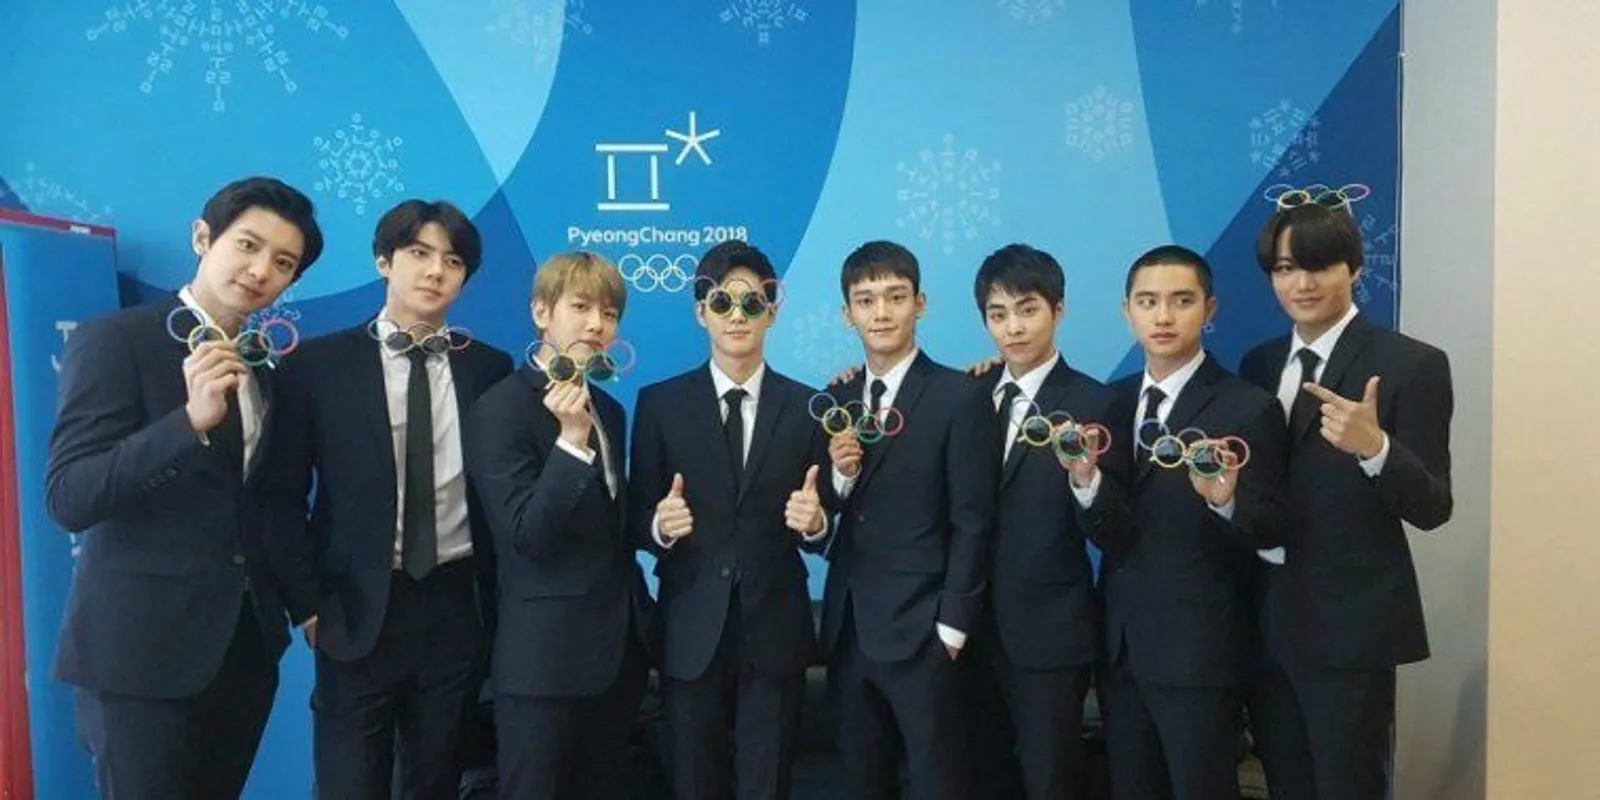 Ini Perjalanan 7 Tahun Karir Boyband EXO, Penuh Prestasi